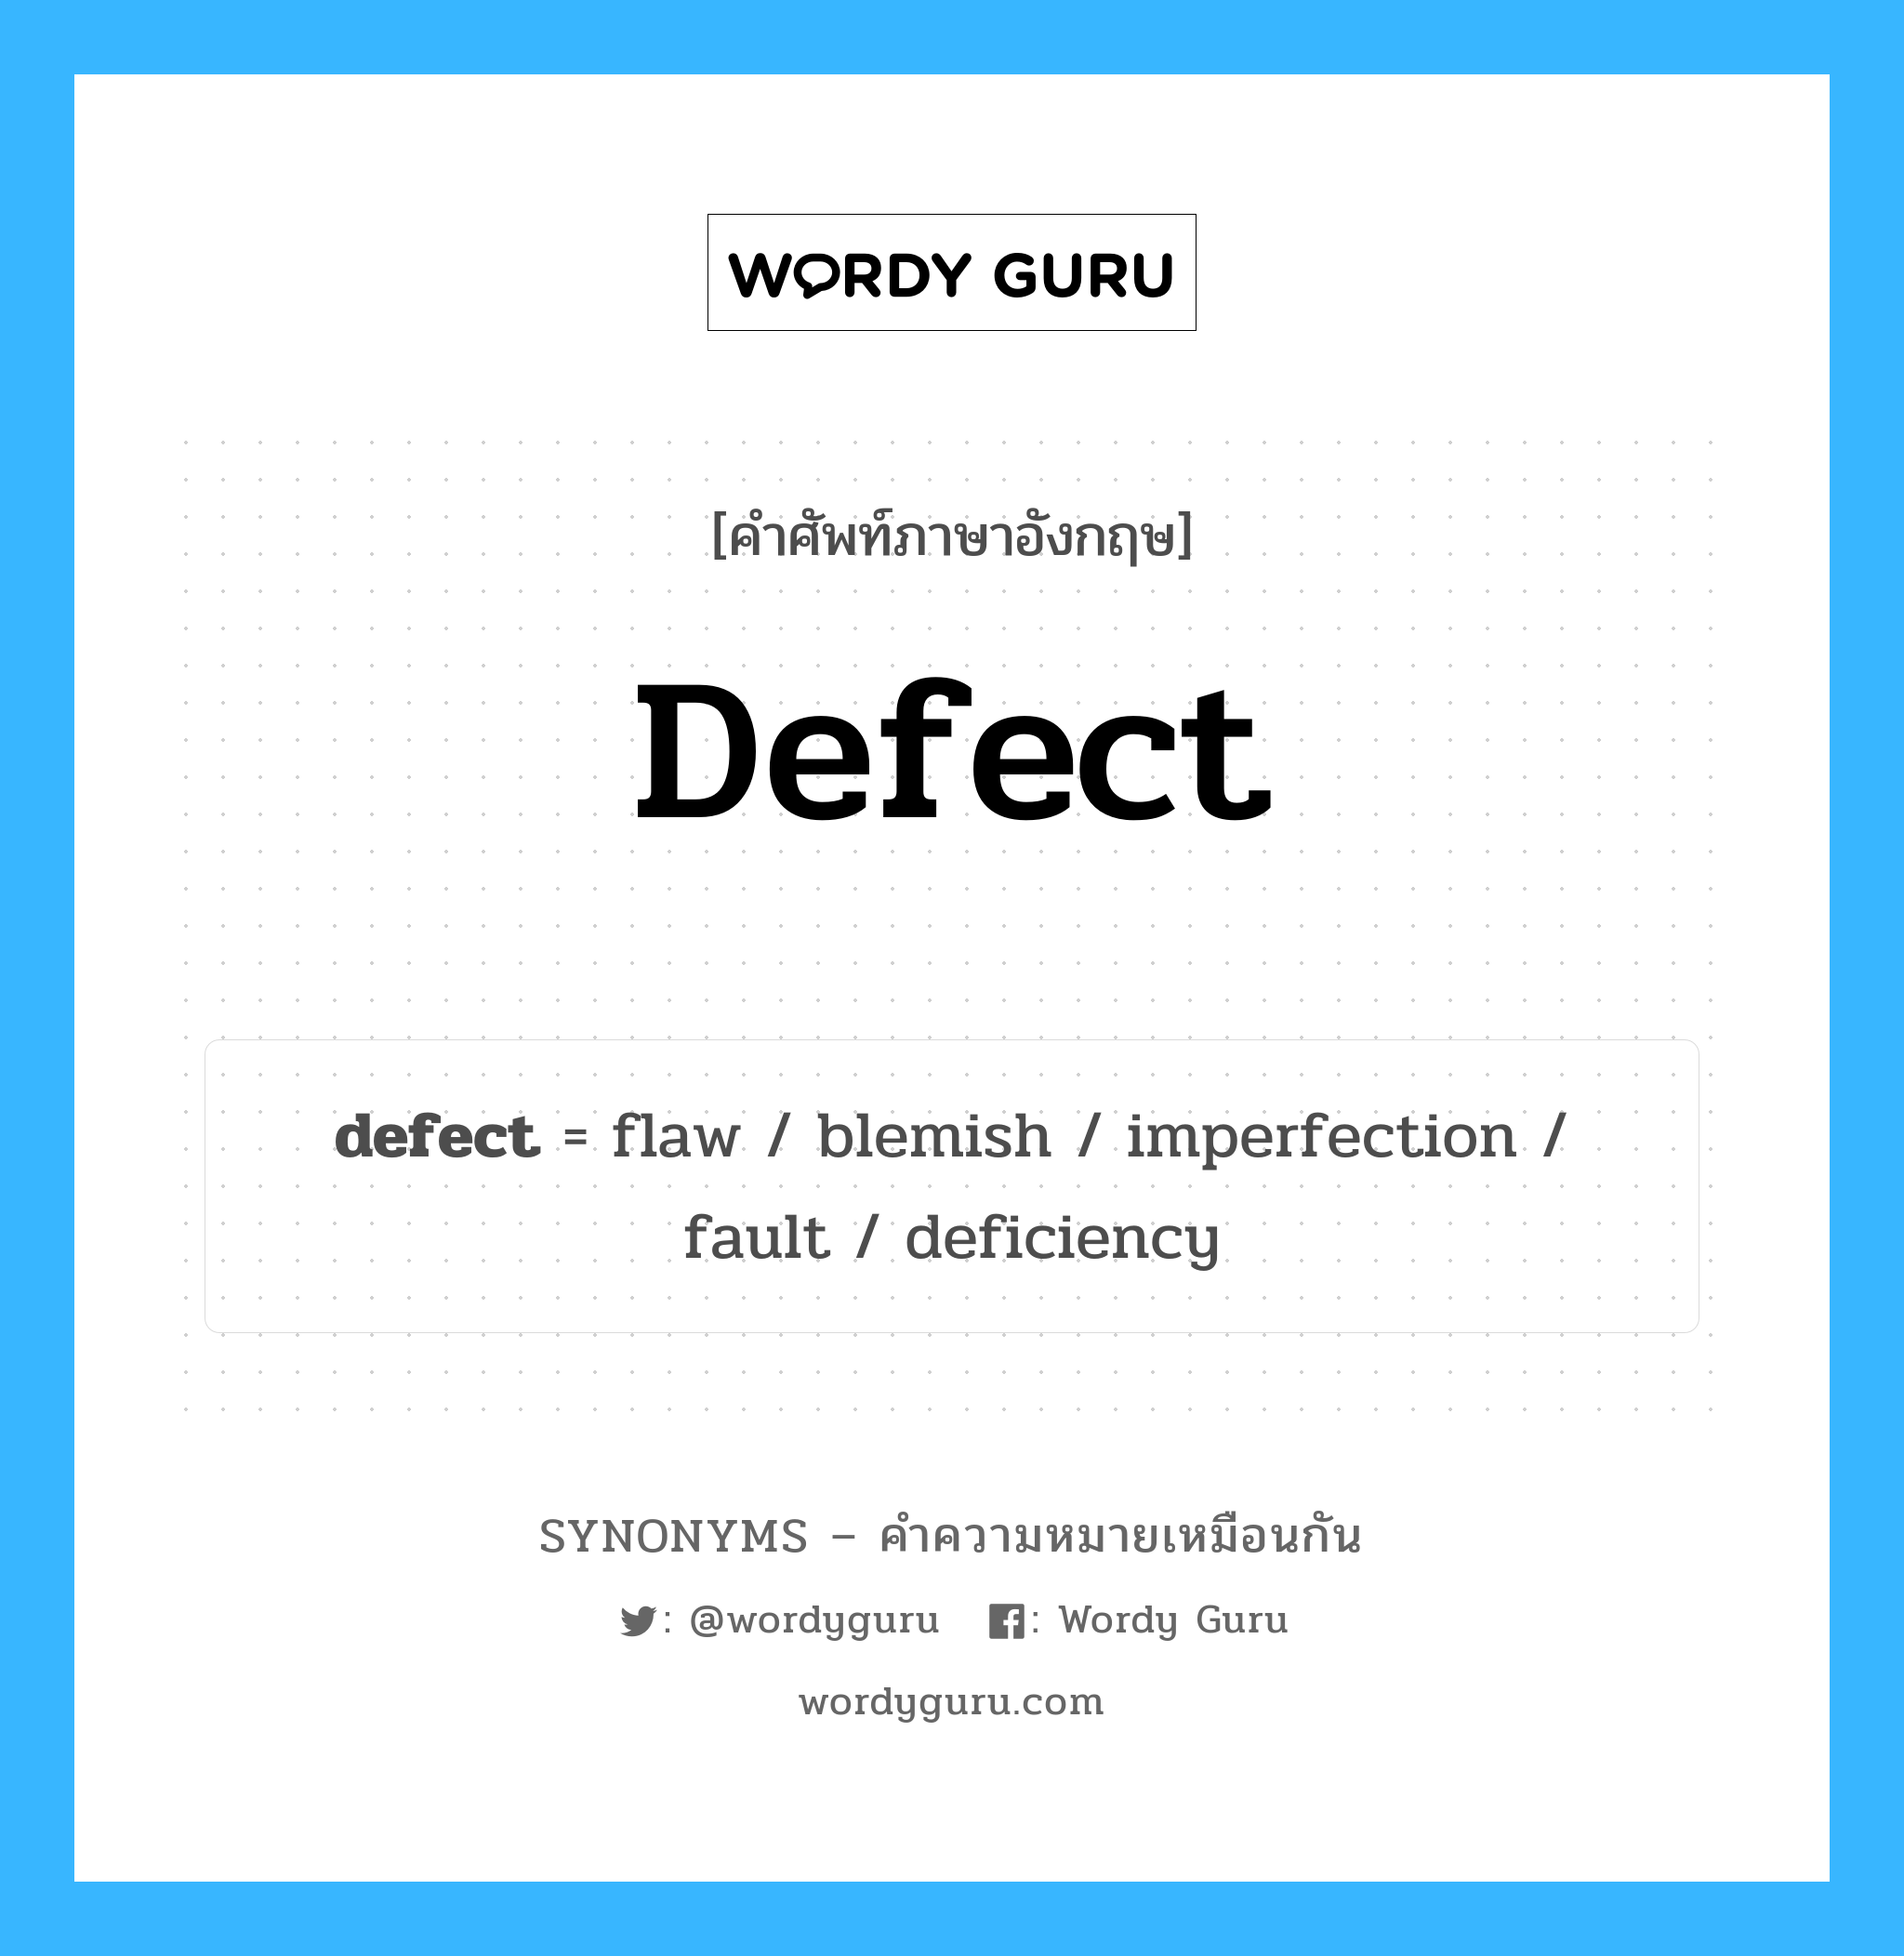 defect เป็นหนึ่งใน fault และมีคำอื่น ๆ อีกดังนี้, คำศัพท์ภาษาอังกฤษ defect ความหมายคล้ายกันกับ fault แปลว่า ข้อบกพร่อง หมวด fault